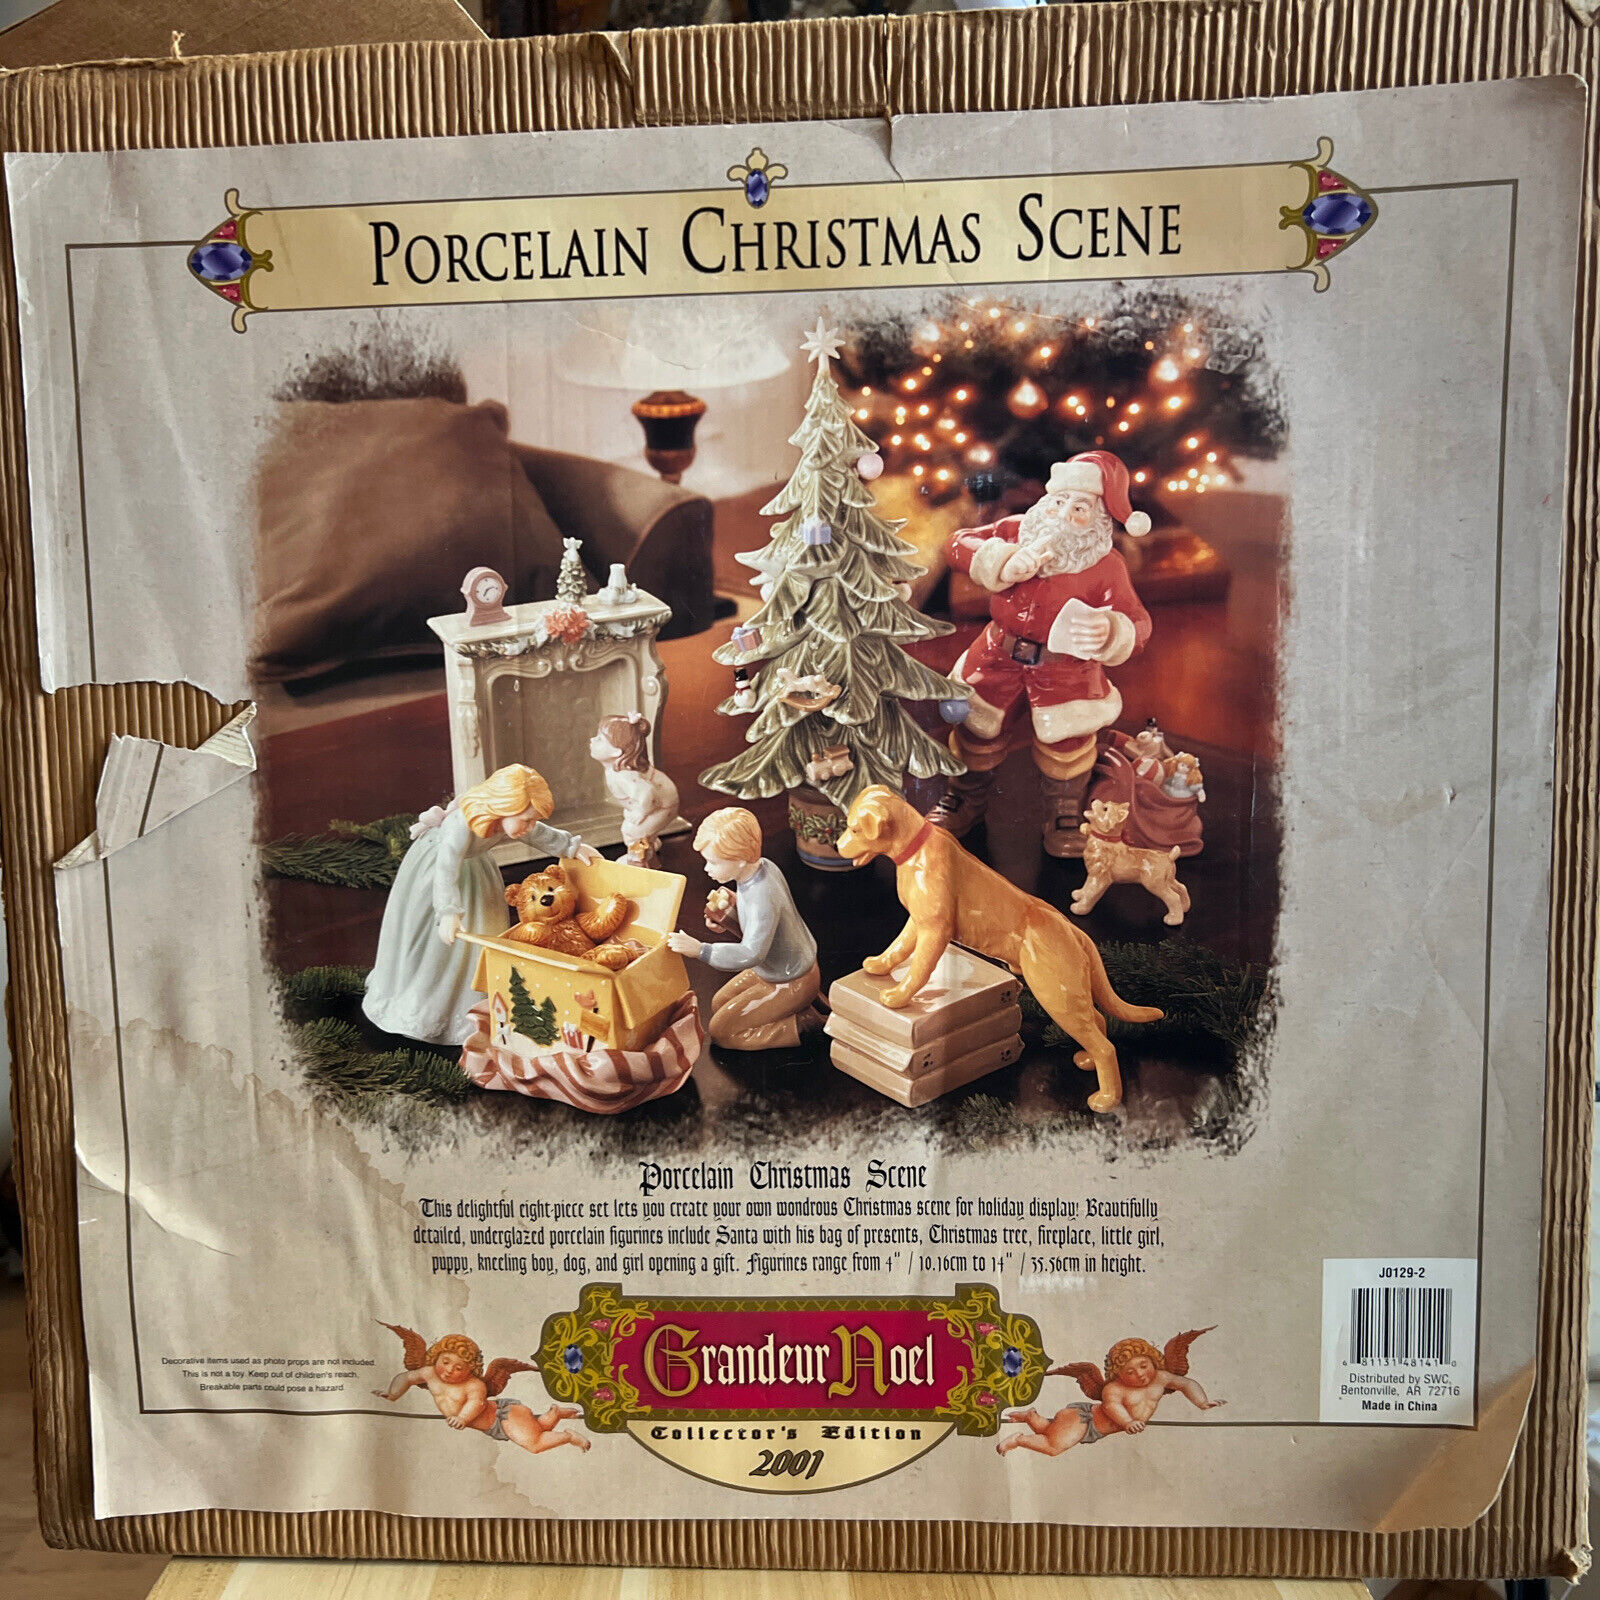 Grandeur noel 2001 Porcelain Christmas Scene complete in box HARD TO FIND